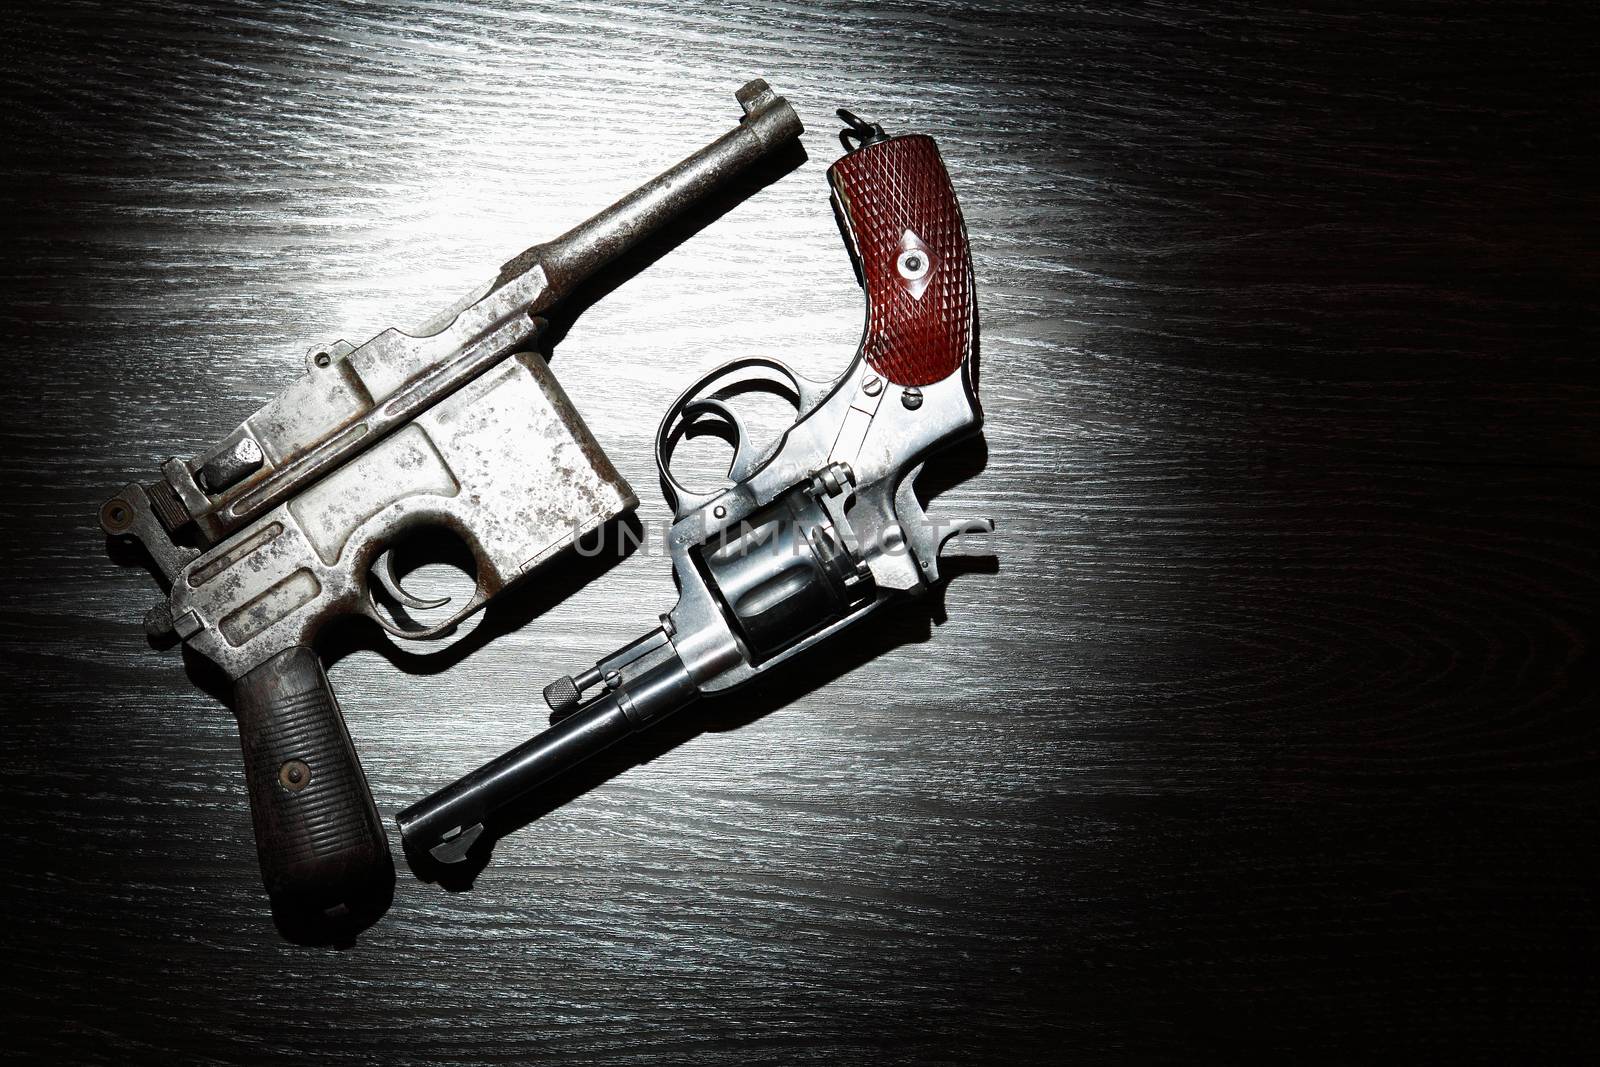 Old Revolver And Pistol by kvkirillov